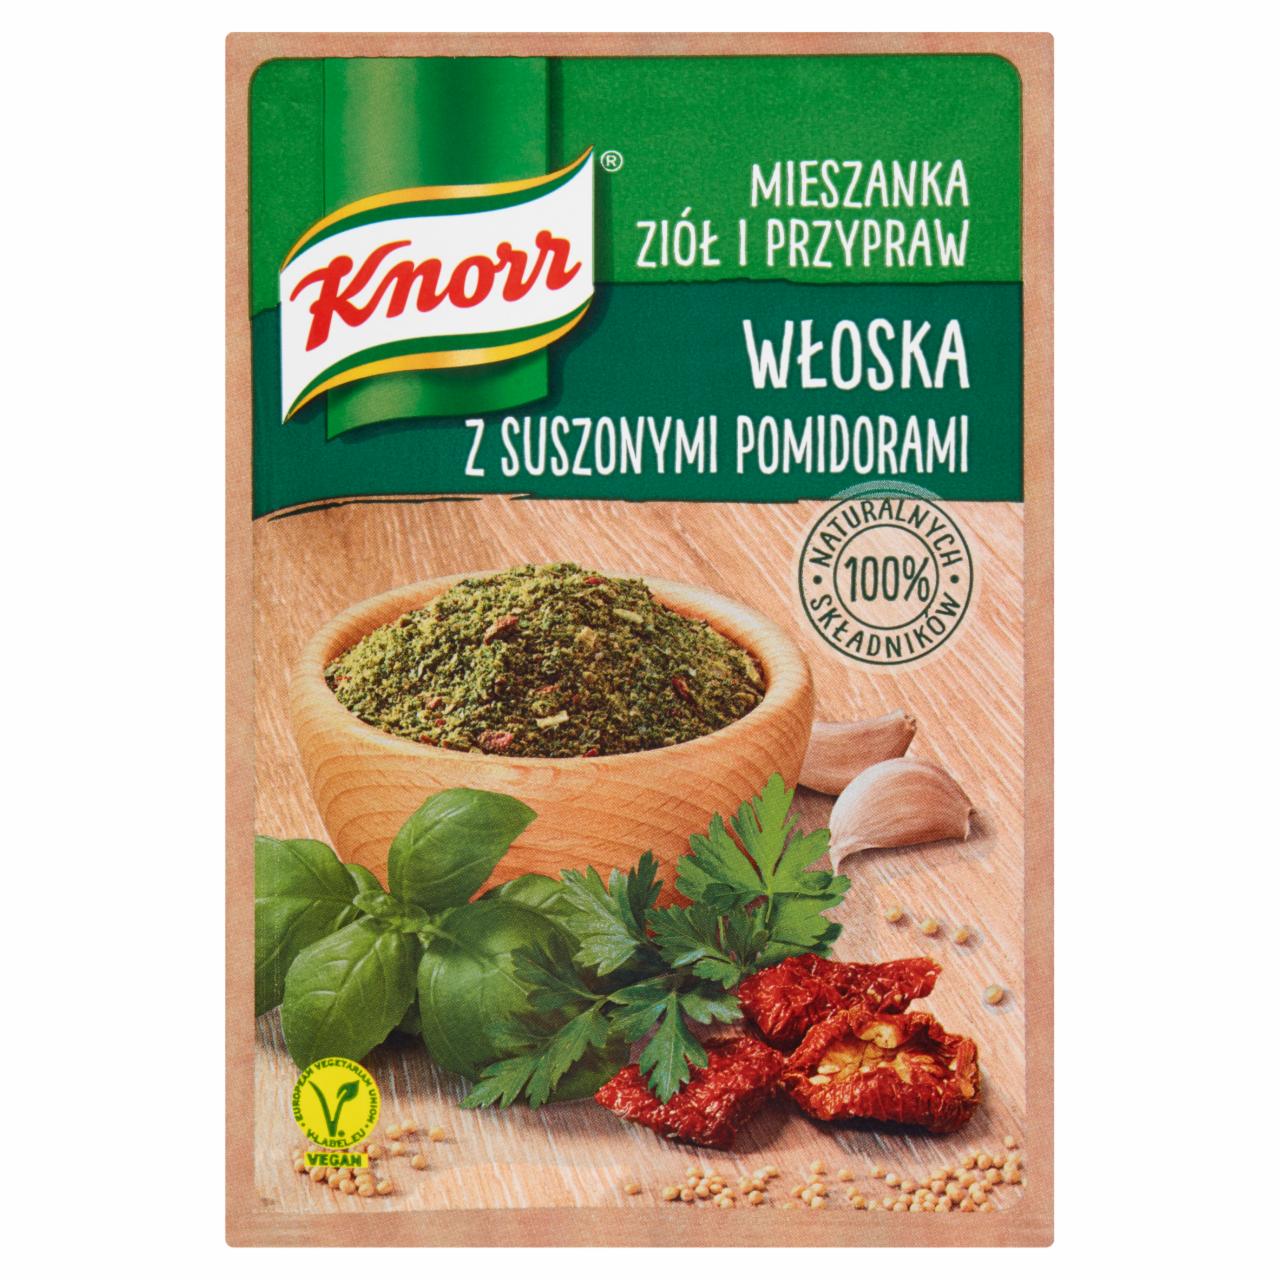 Zdjęcia - Knorr Mieszanka ziół i przypraw włoska z suszonymi pomidorami 13,5 g